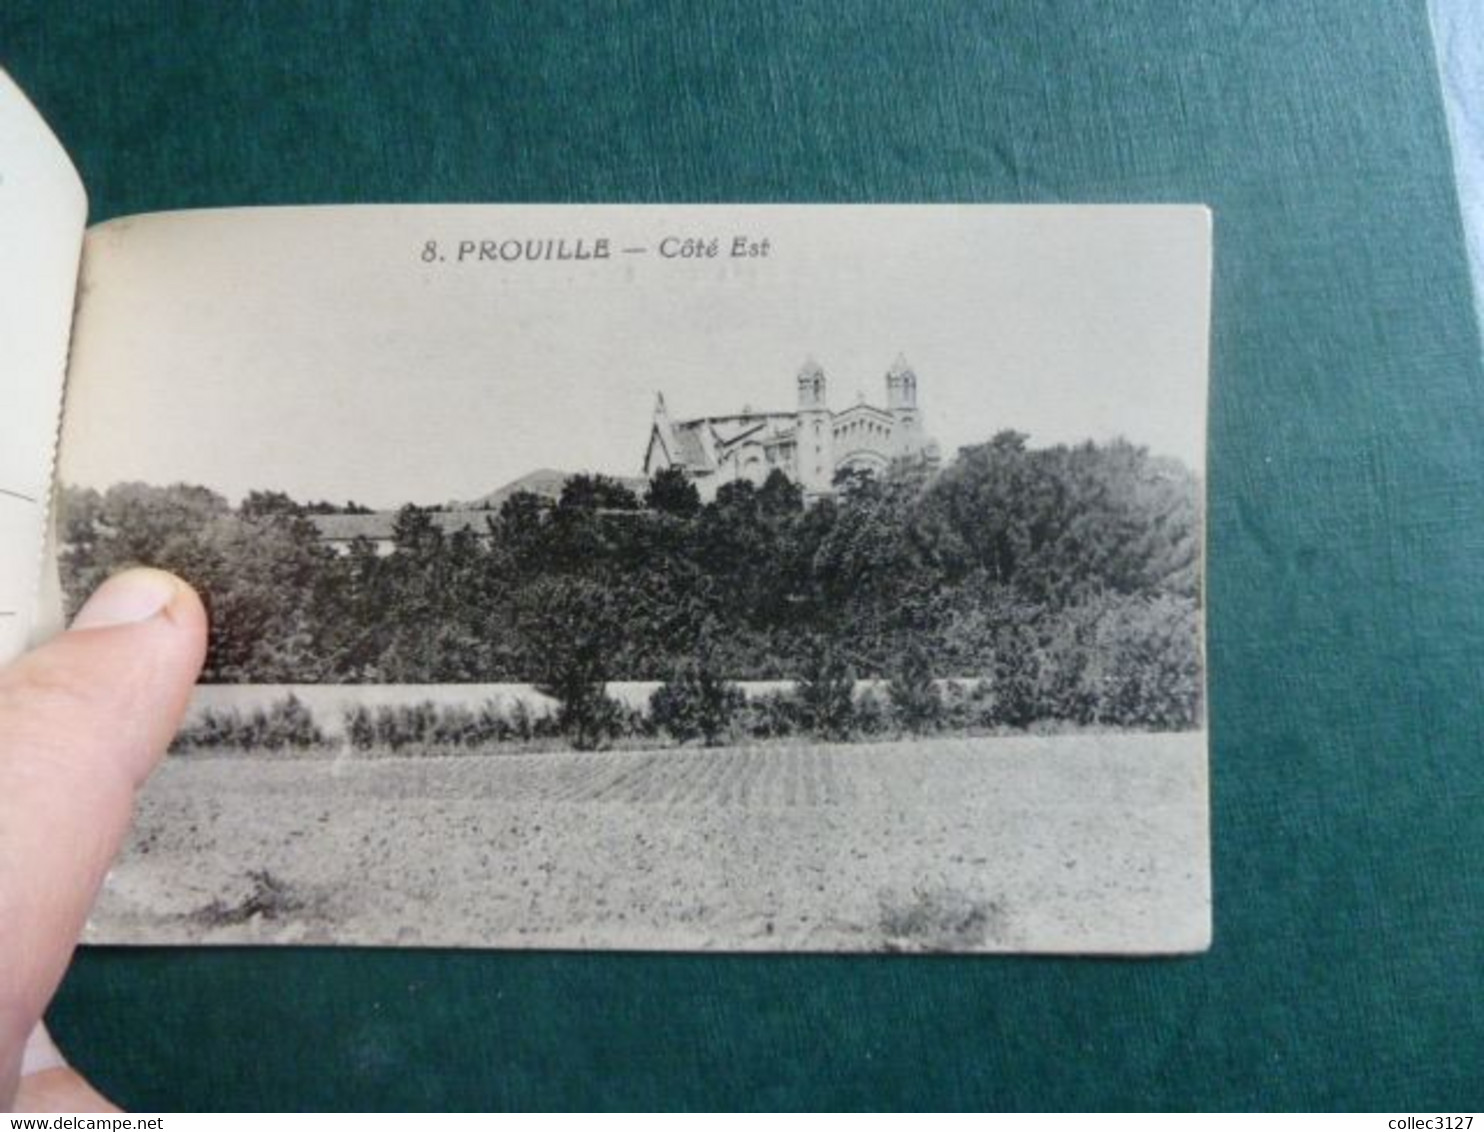 F21 - 11 - Album Souvenir du Monastere de Prouille - Carnet de 8 Cartes détachables - complet